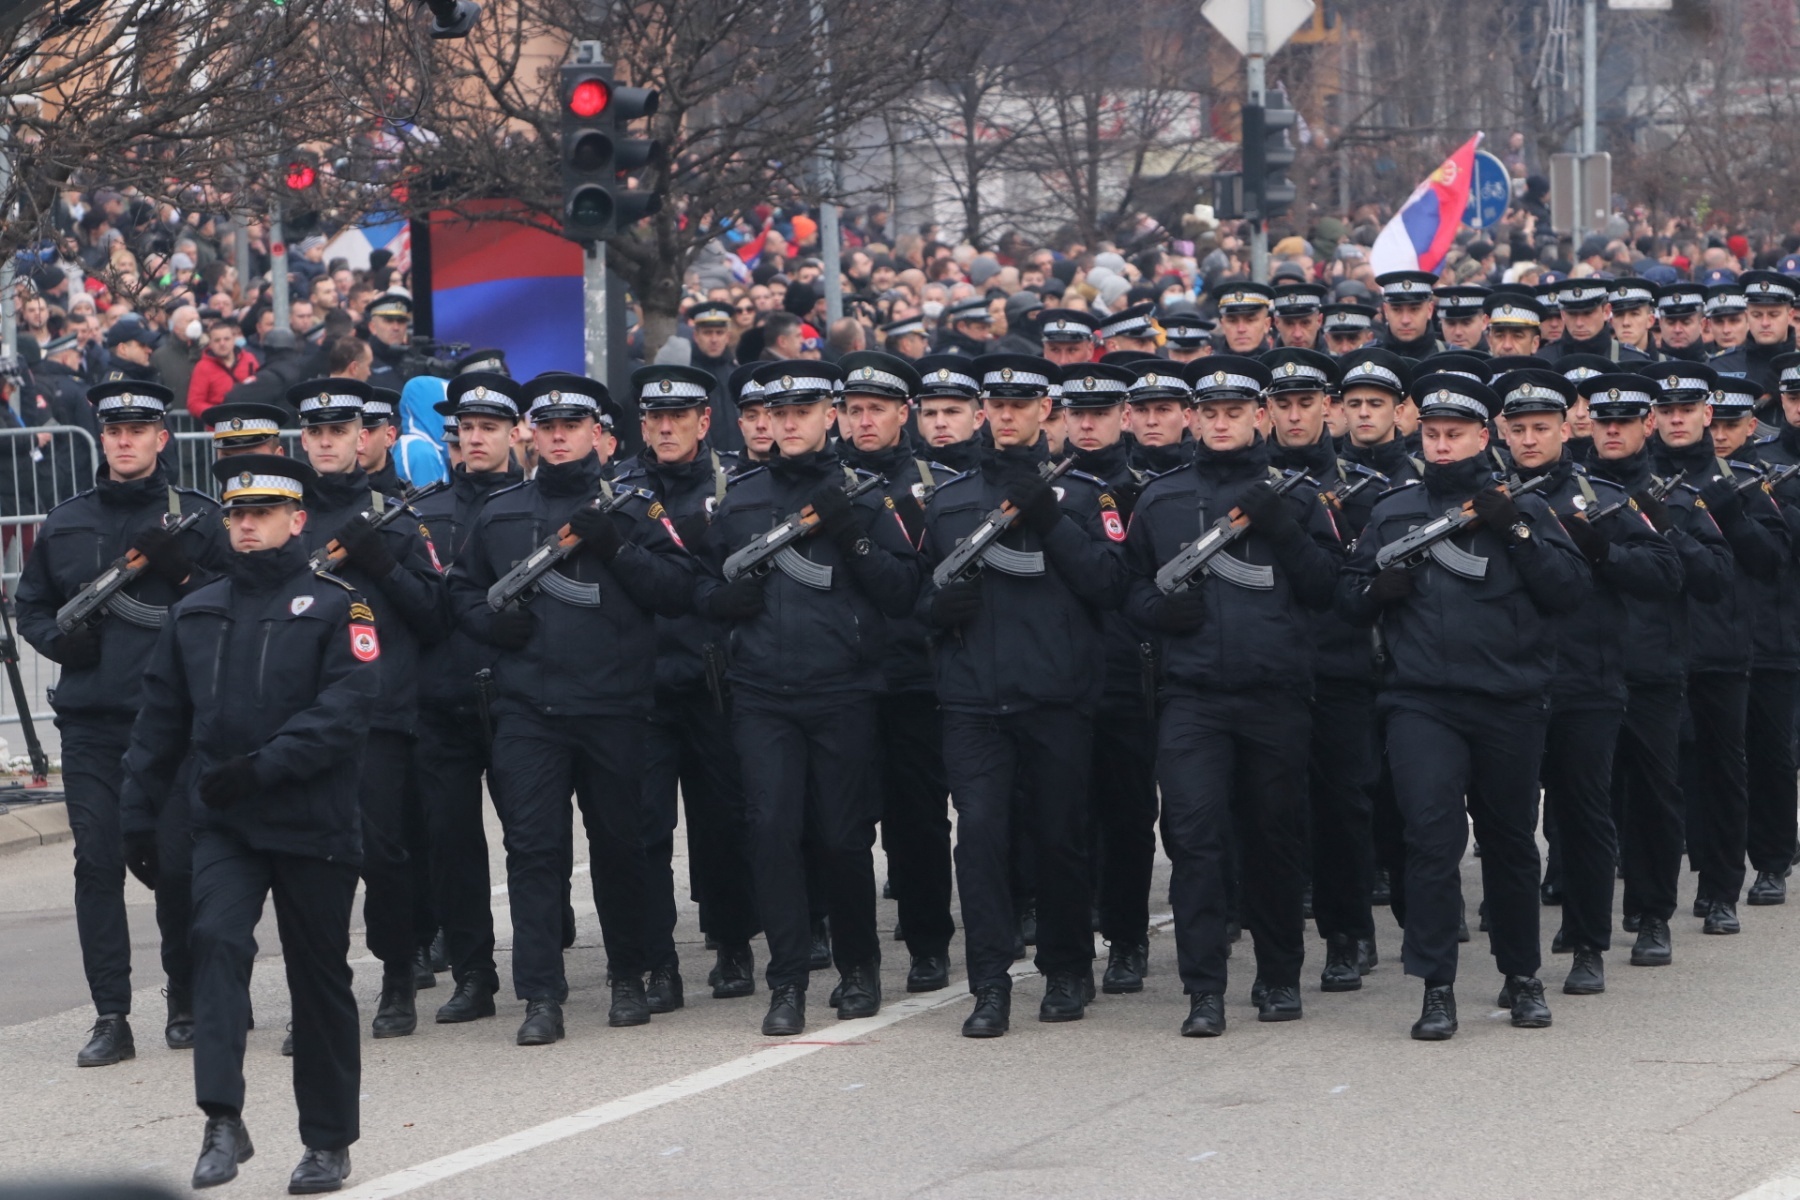 Uniformerte og bevæpnede politifolk marsjerer taktfast. Et stort publikum ser på. Flere av Republika Srpskas flagg skimtes omkring.